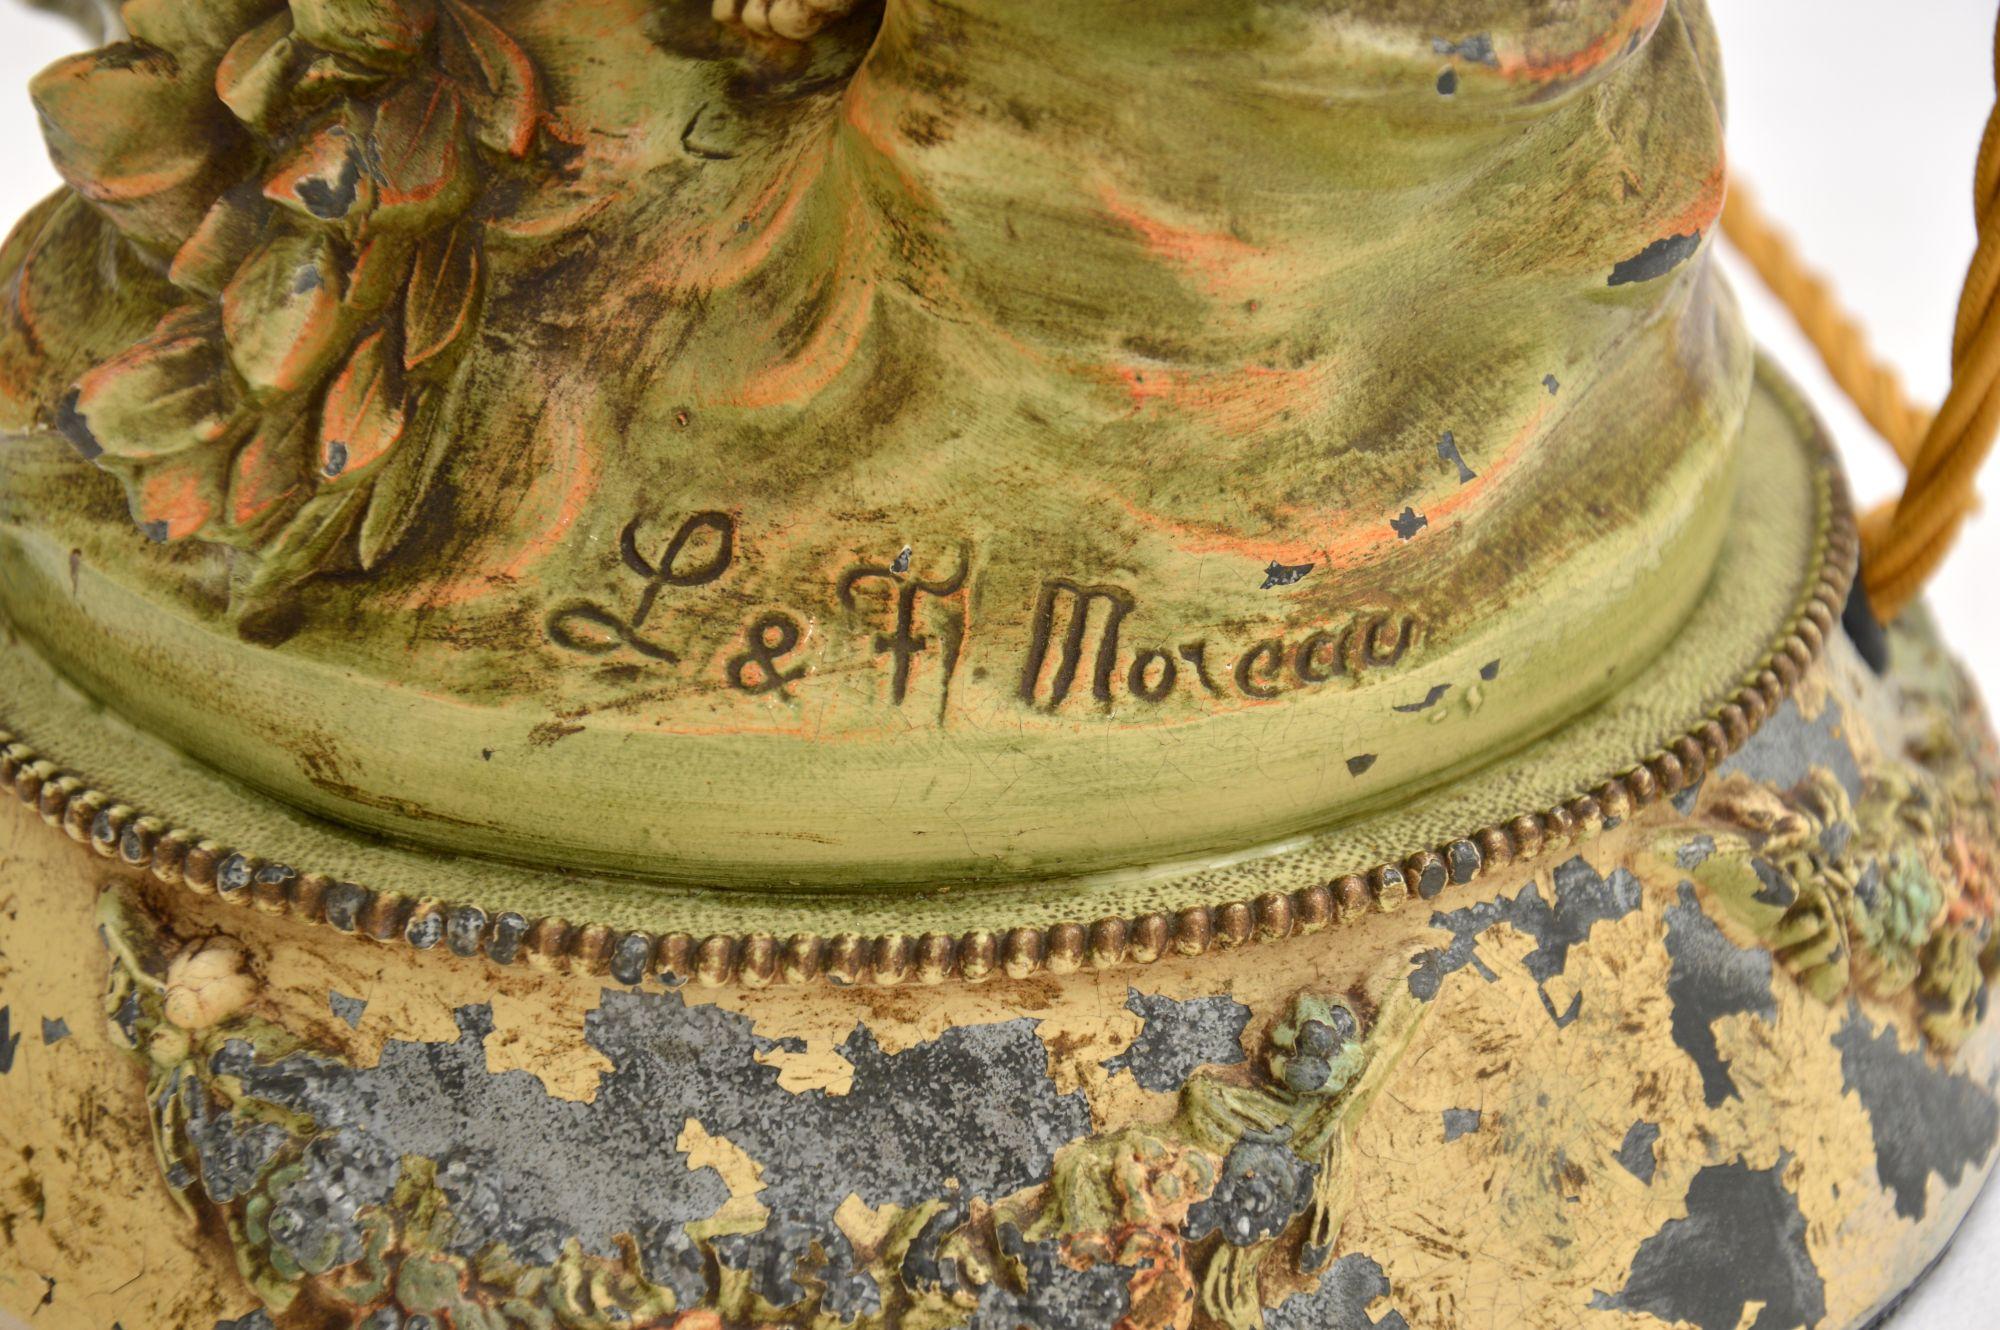 Antique Art Nouveau Table Lamp by L & F Moreau For Sale 2